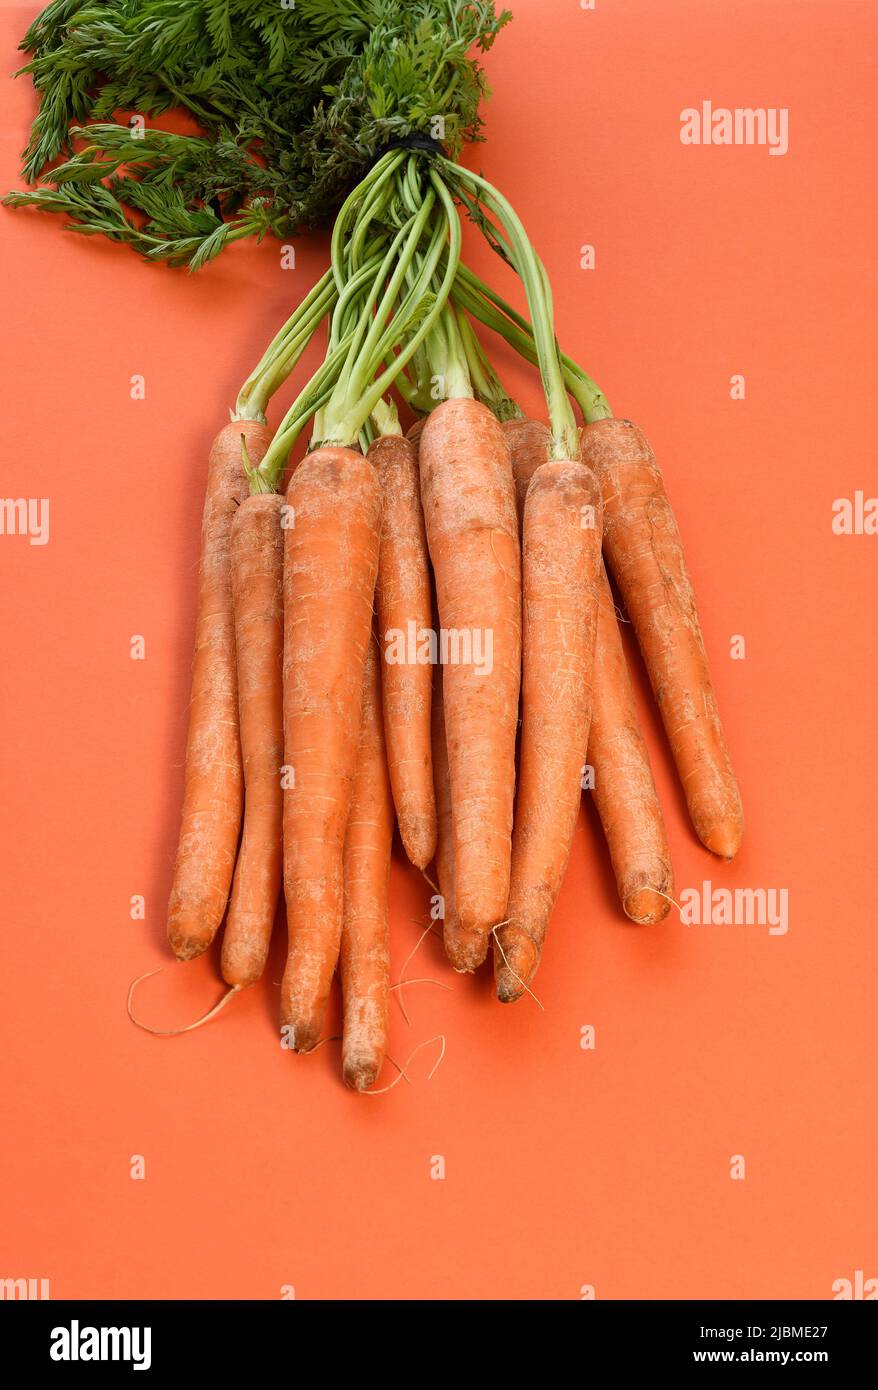 Ein Bund frischer Karotten mit grünen Stielen Stockfoto